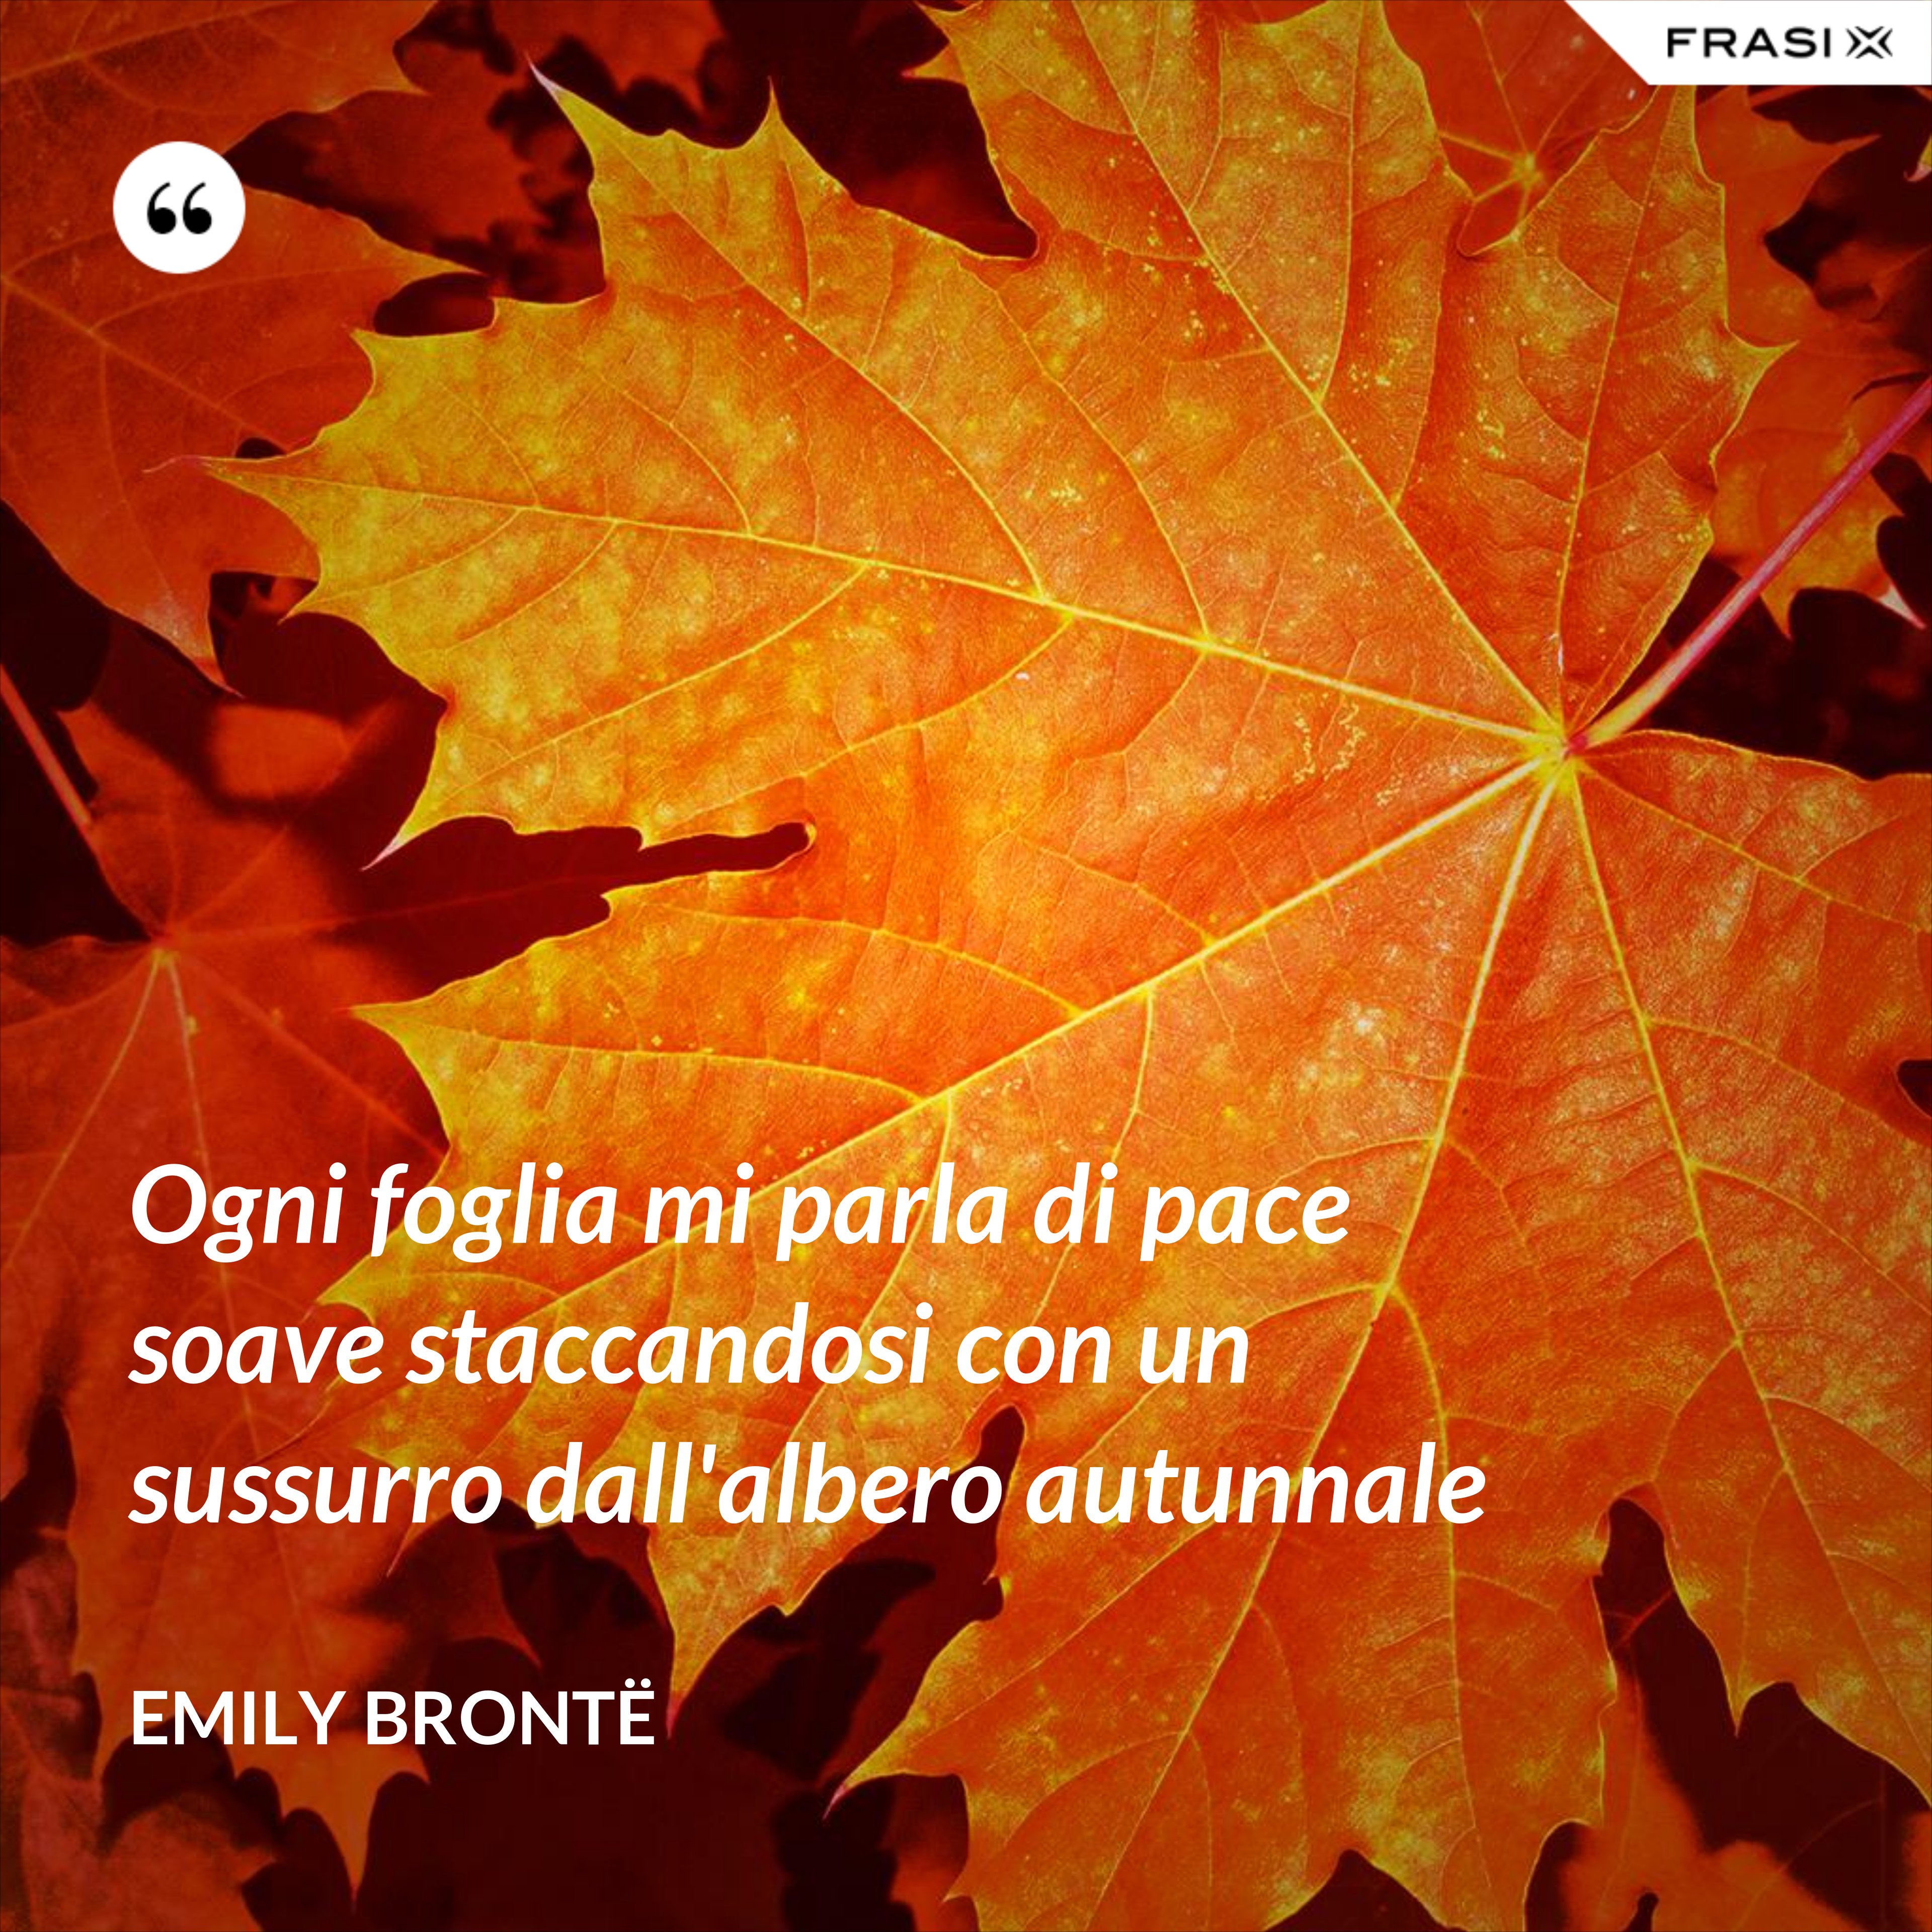 Ogni foglia mi parla di pace soave staccandosi con un sussurro dall'albero autunnale - Emily Brontë